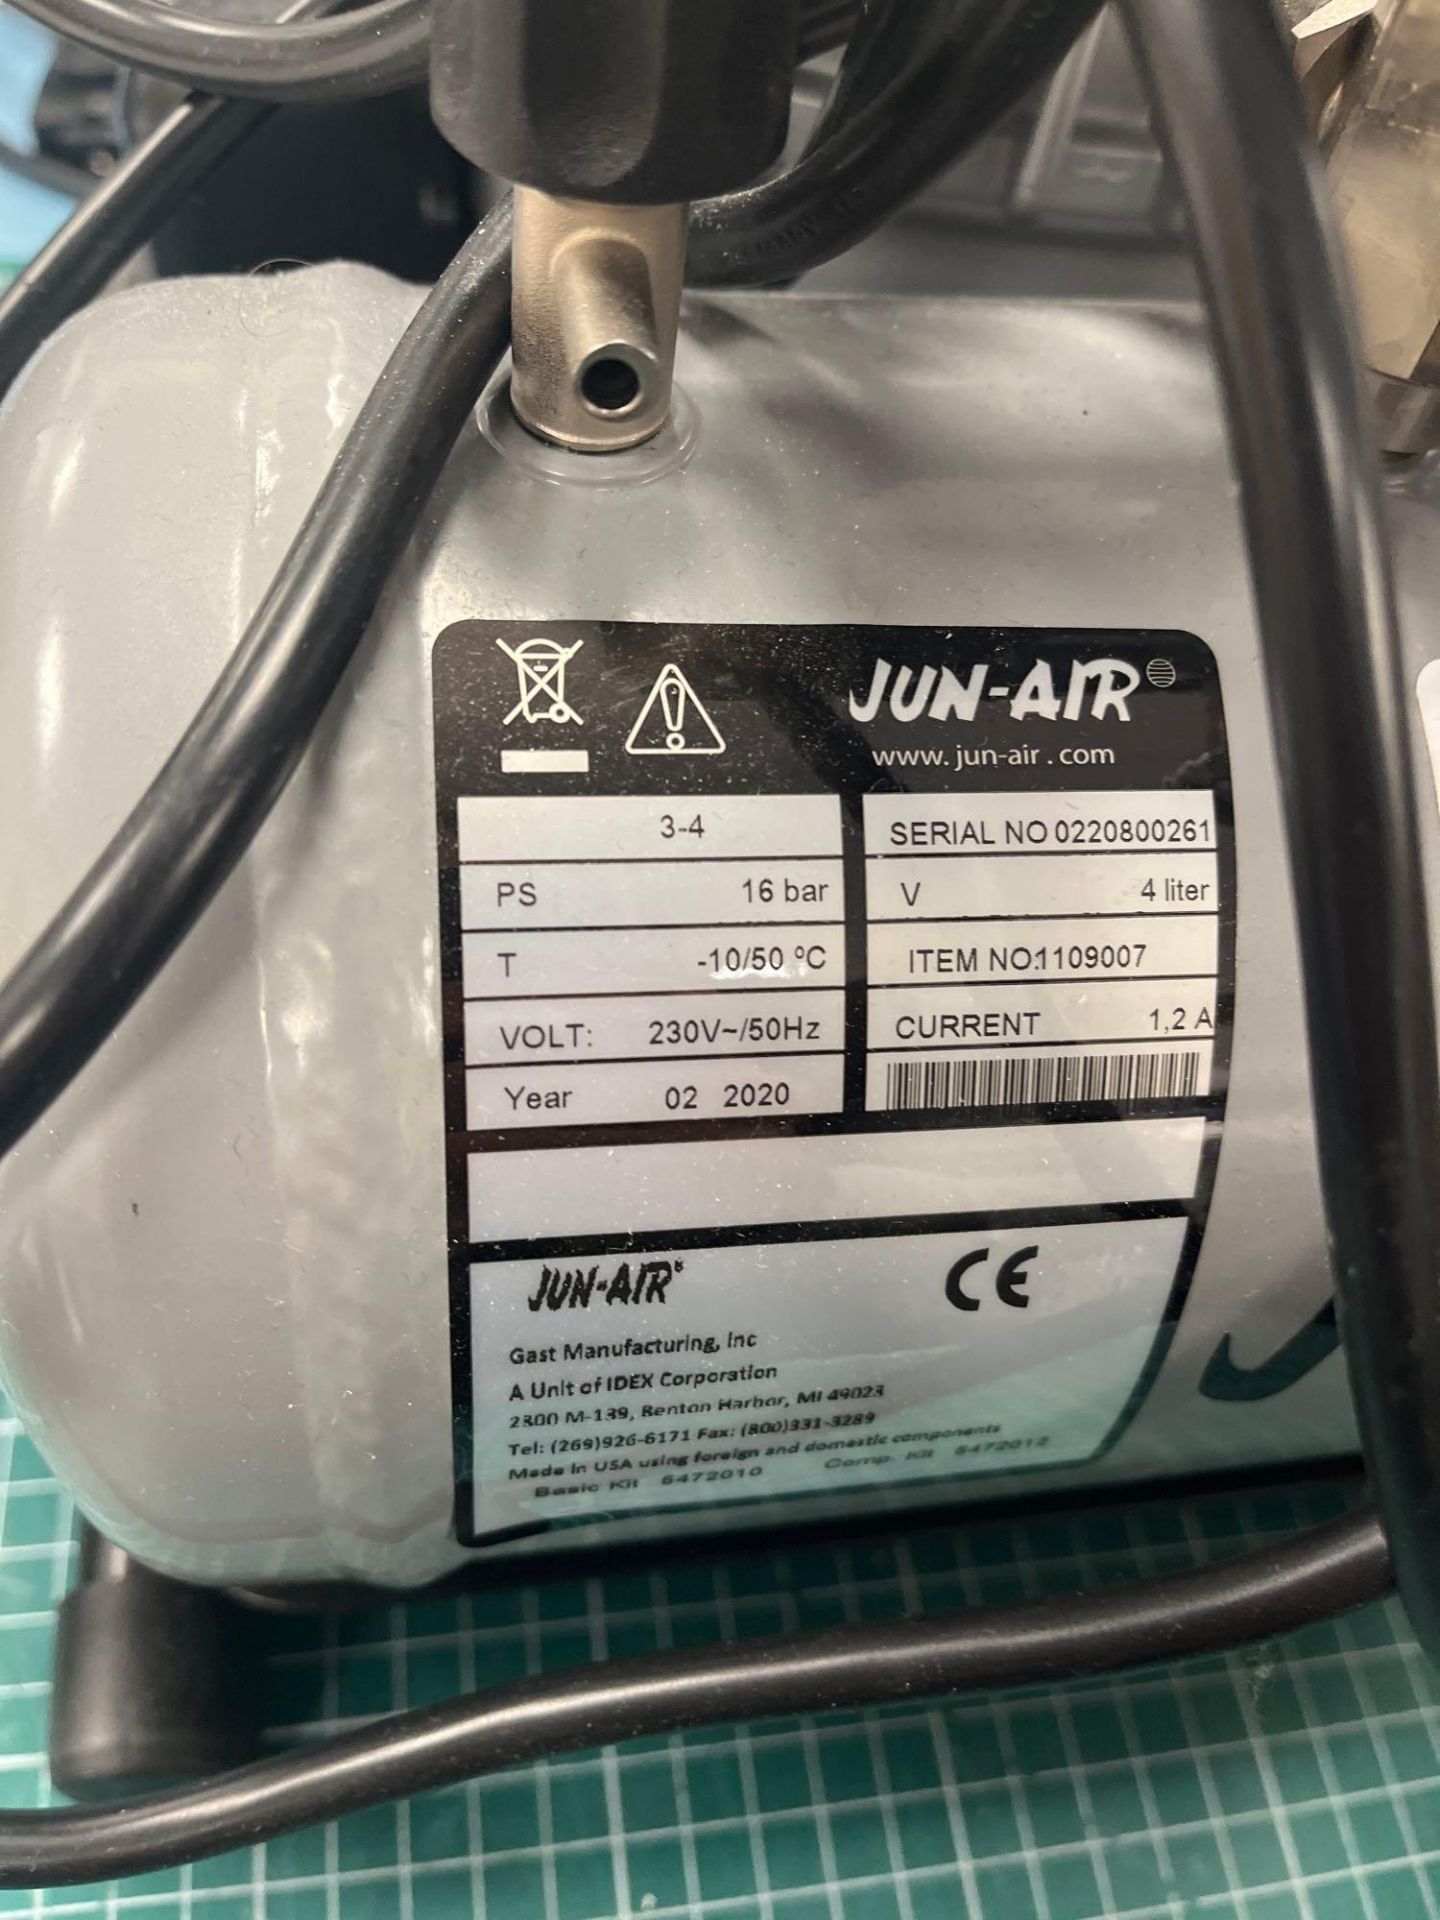 Jun-Air 4L 16bar air compressor (2020) - Image 2 of 4